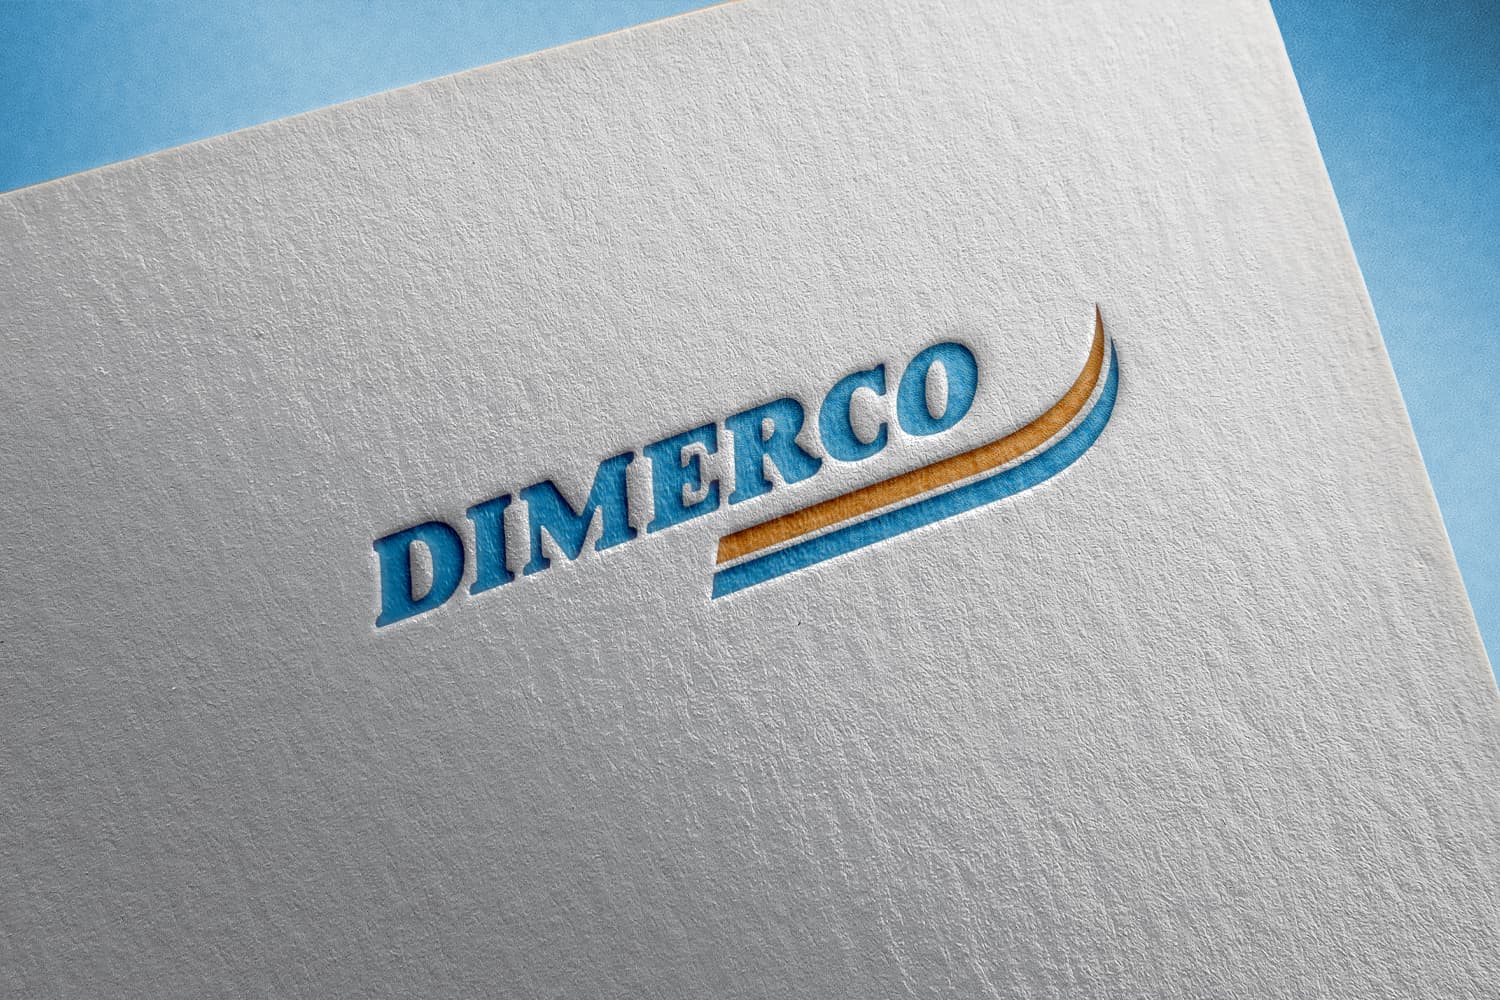 Dimerco Report